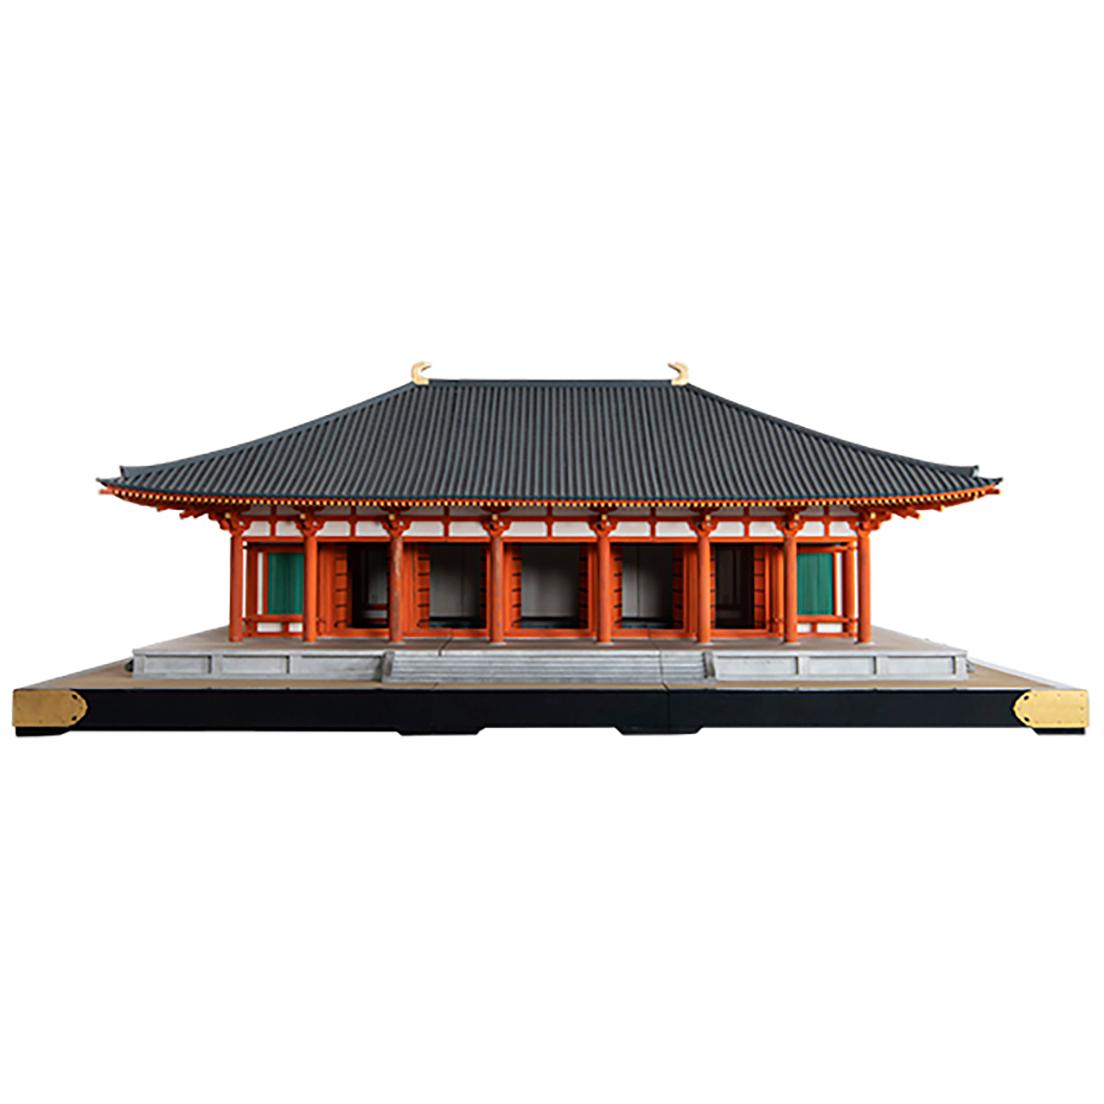 唐招提寺金堂1/10模型 1963年 東京国立博物館蔵